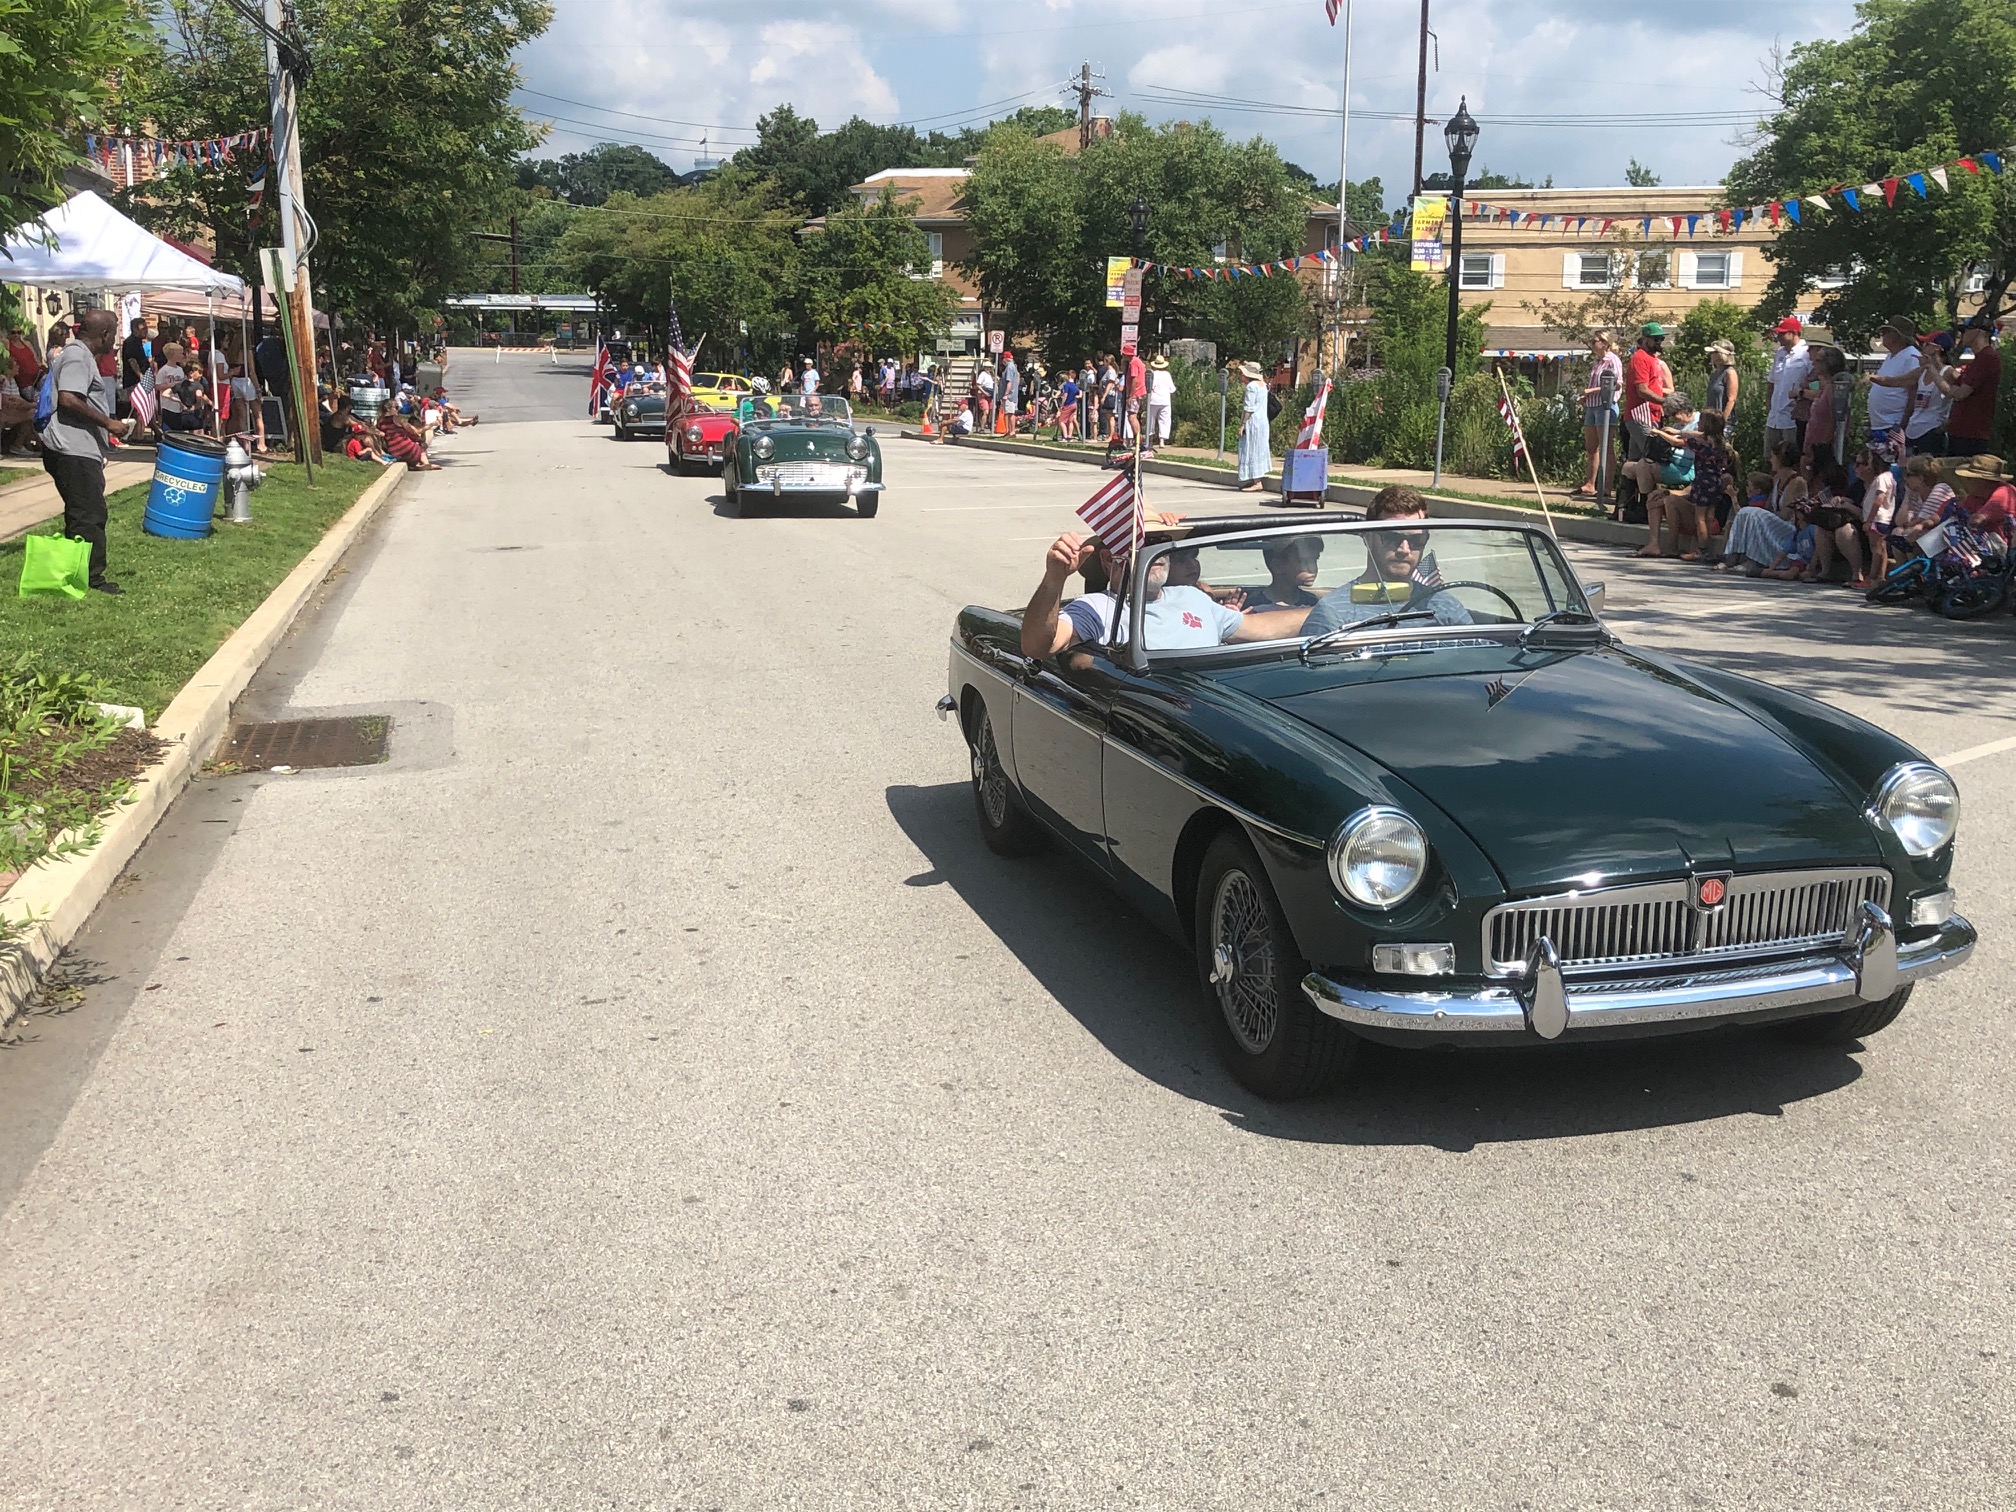  British car parade in Swarthmore 